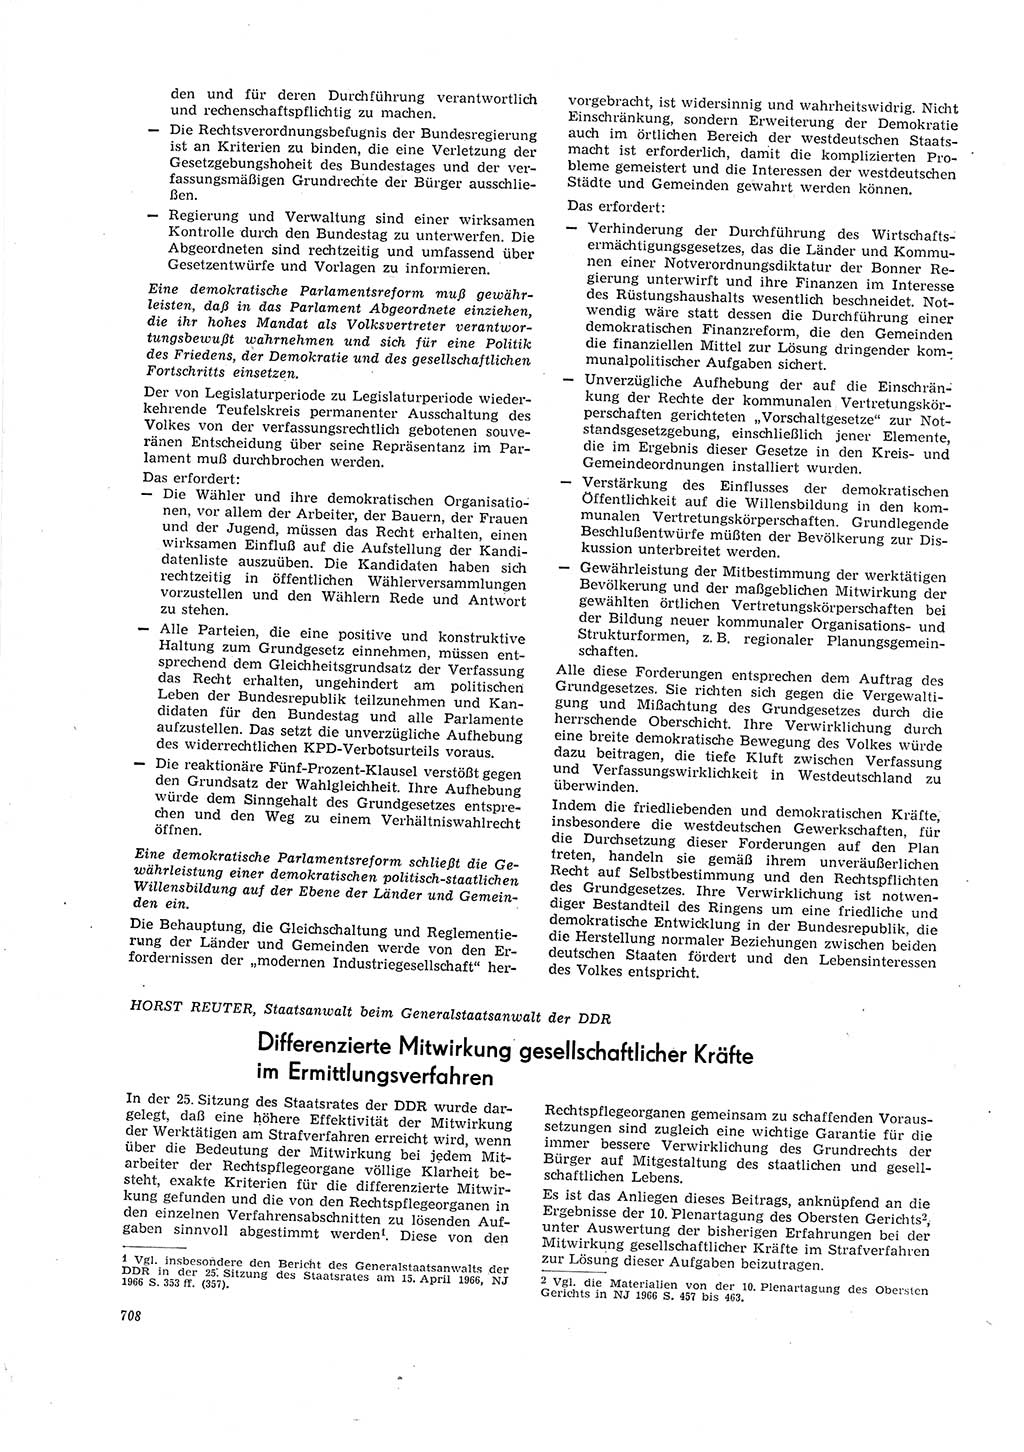 Neue Justiz (NJ), Zeitschrift für Recht und Rechtswissenschaft [Deutsche Demokratische Republik (DDR)], 20. Jahrgang 1966, Seite 708 (NJ DDR 1966, S. 708)